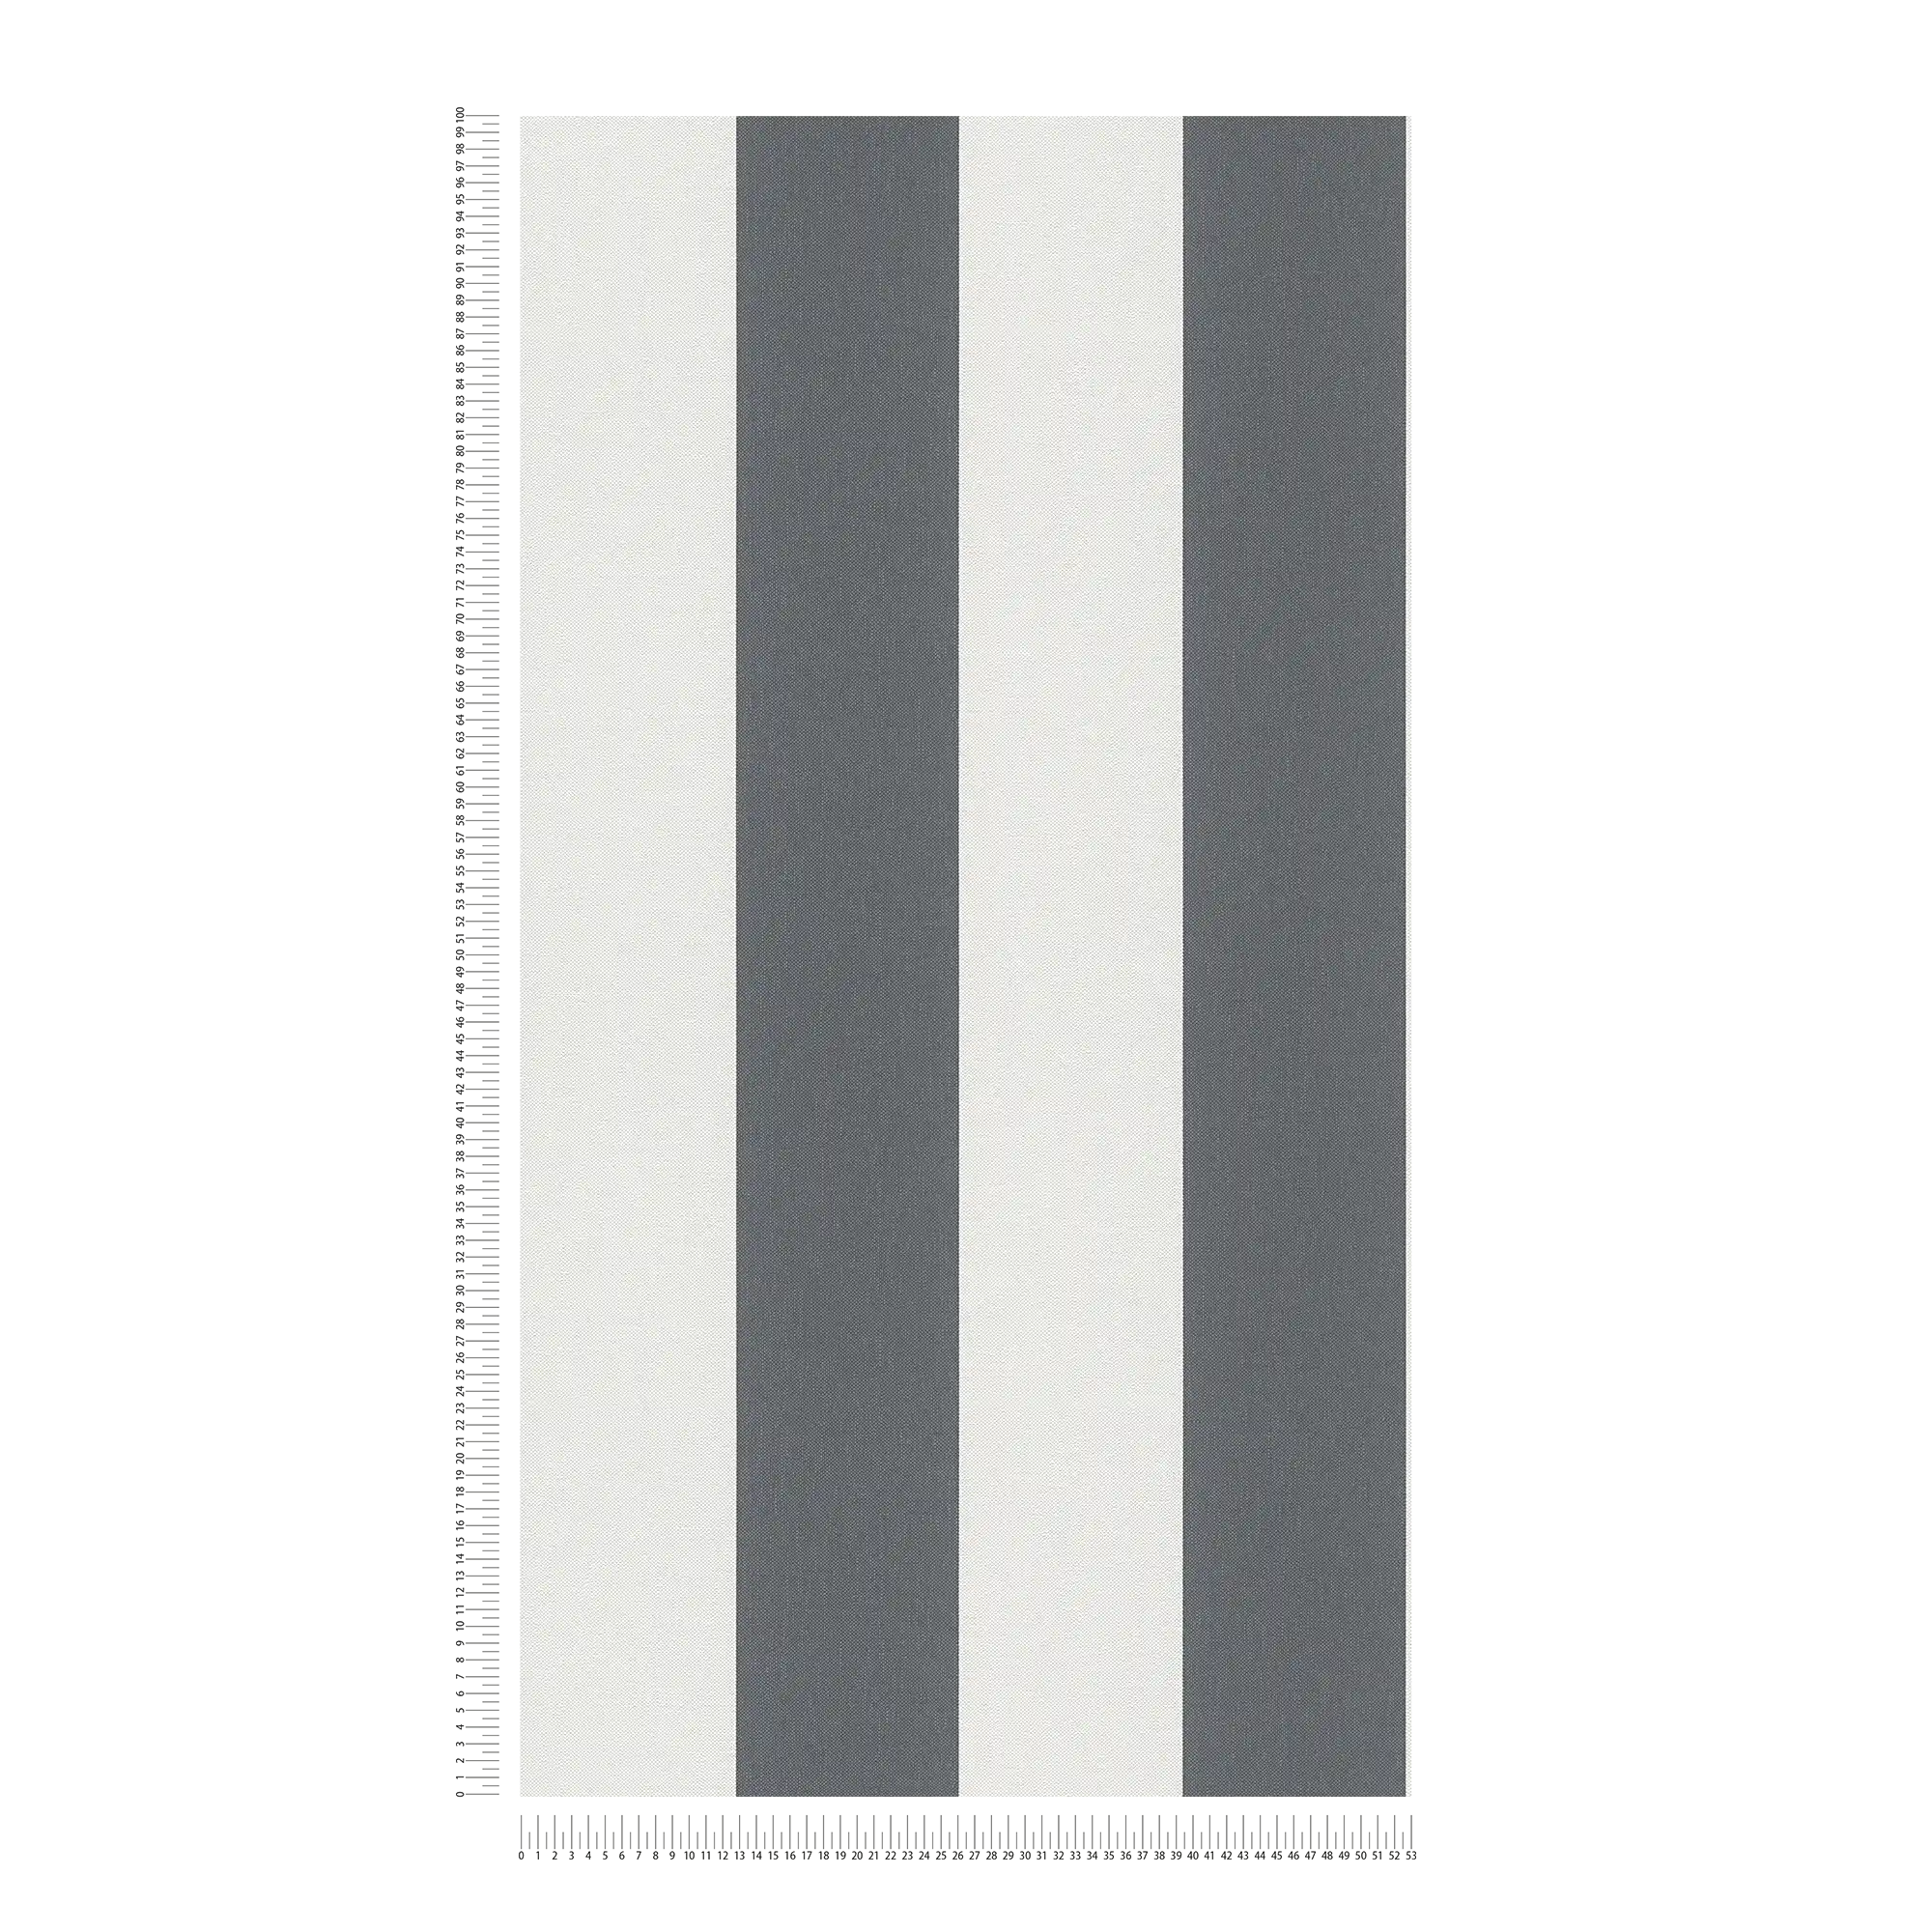             Carta da parati a righe a blocchi con struttura in lino - grigio, bianco
        